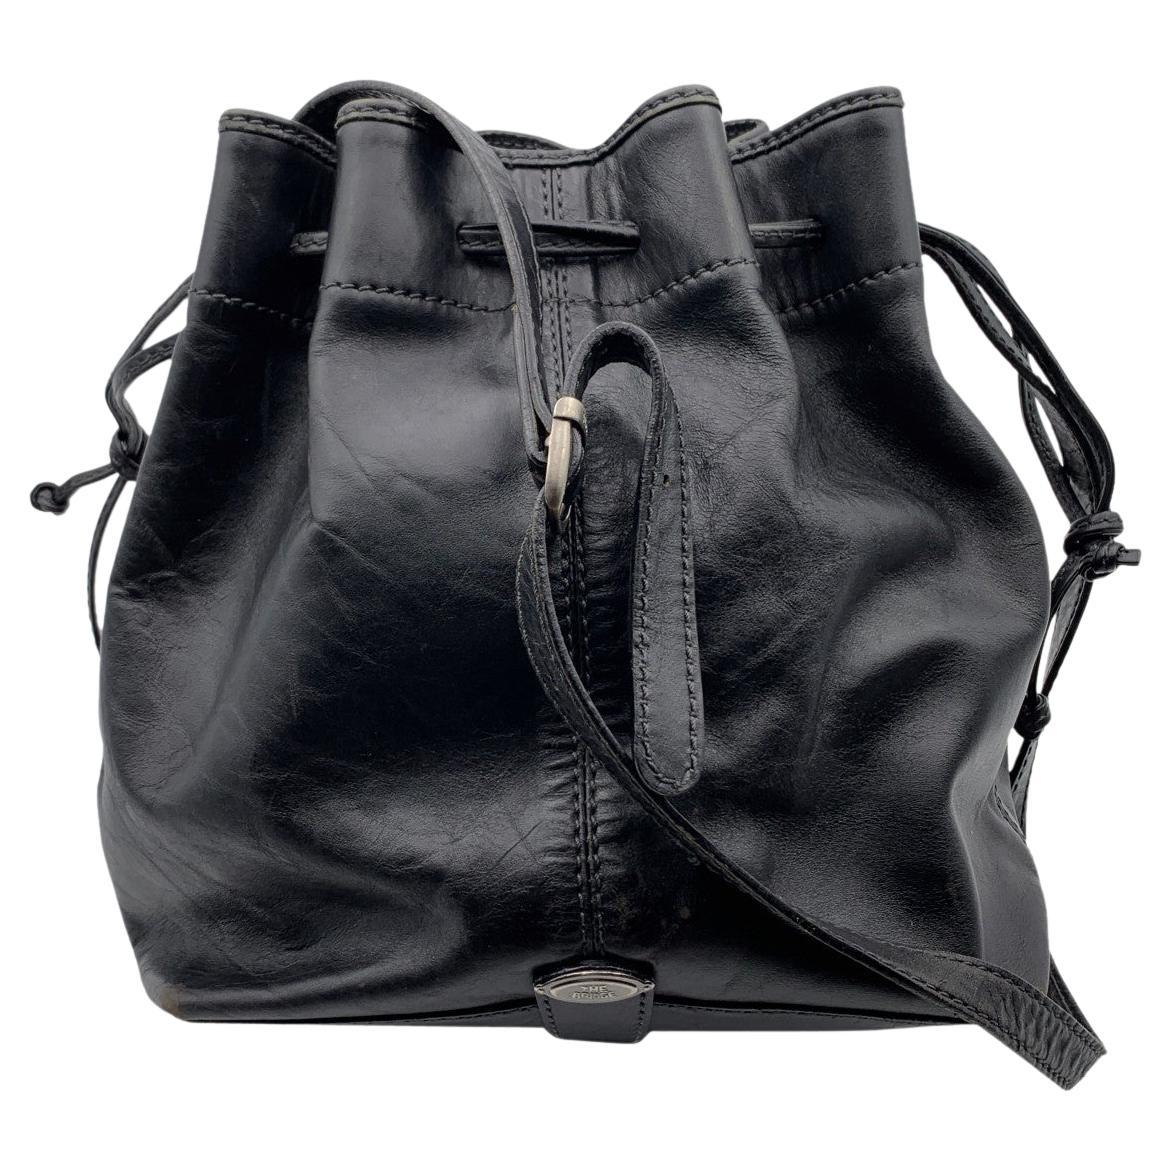 The Bridge Black Leather Drawstring Bucket Shoulder Bag